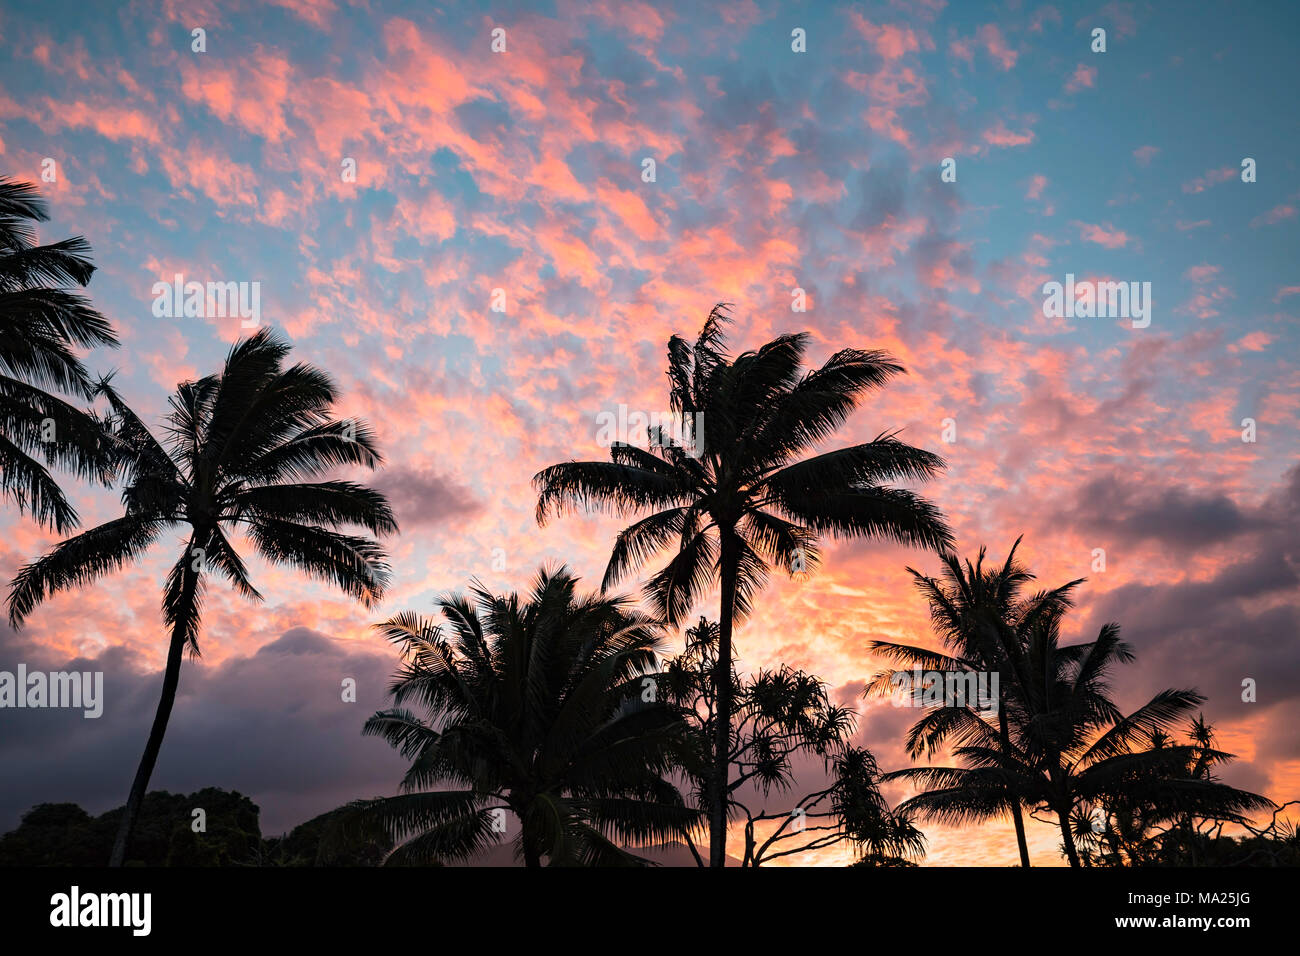 Palmen in der Nähe von Hana sind in silouhette mit Sonnenuntergang Farben auf Wolken im Himmel, Maui, Hawaii. Stockfoto